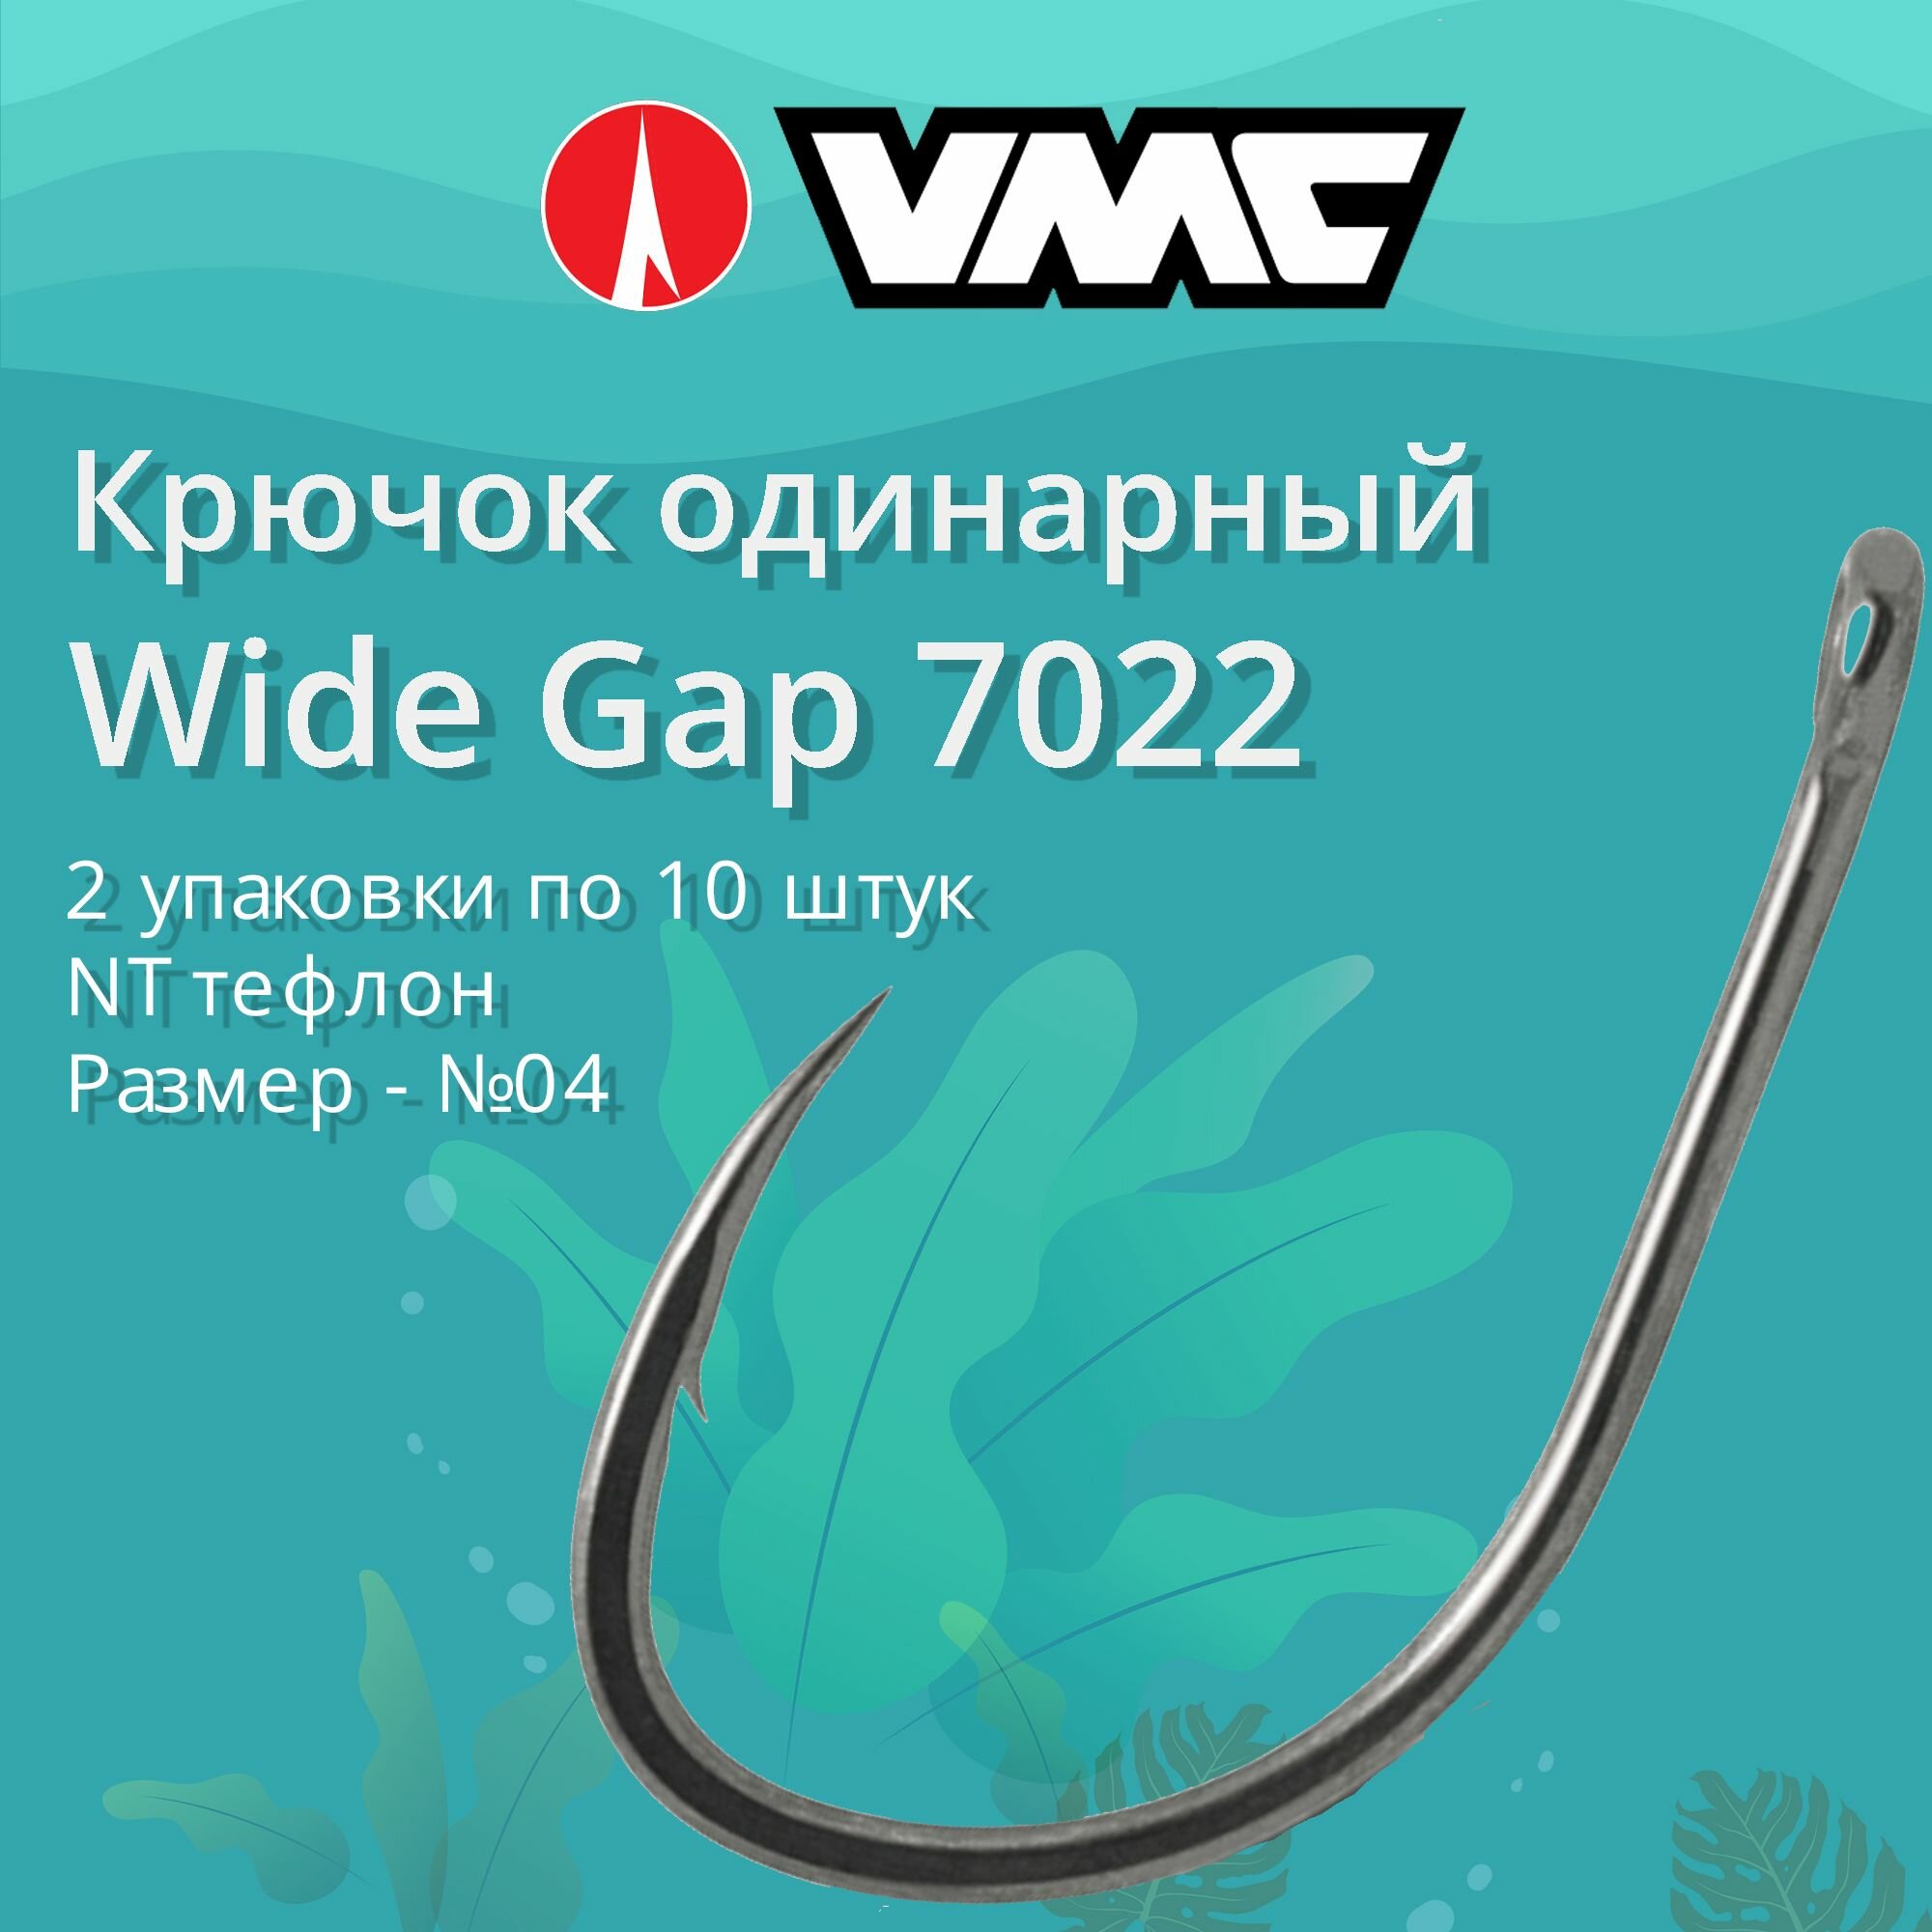 Крючки для рыбалки (одинарный) VMC Wide Gap 7022 NT (тефлон) №04 2 упаковки по 10 штук